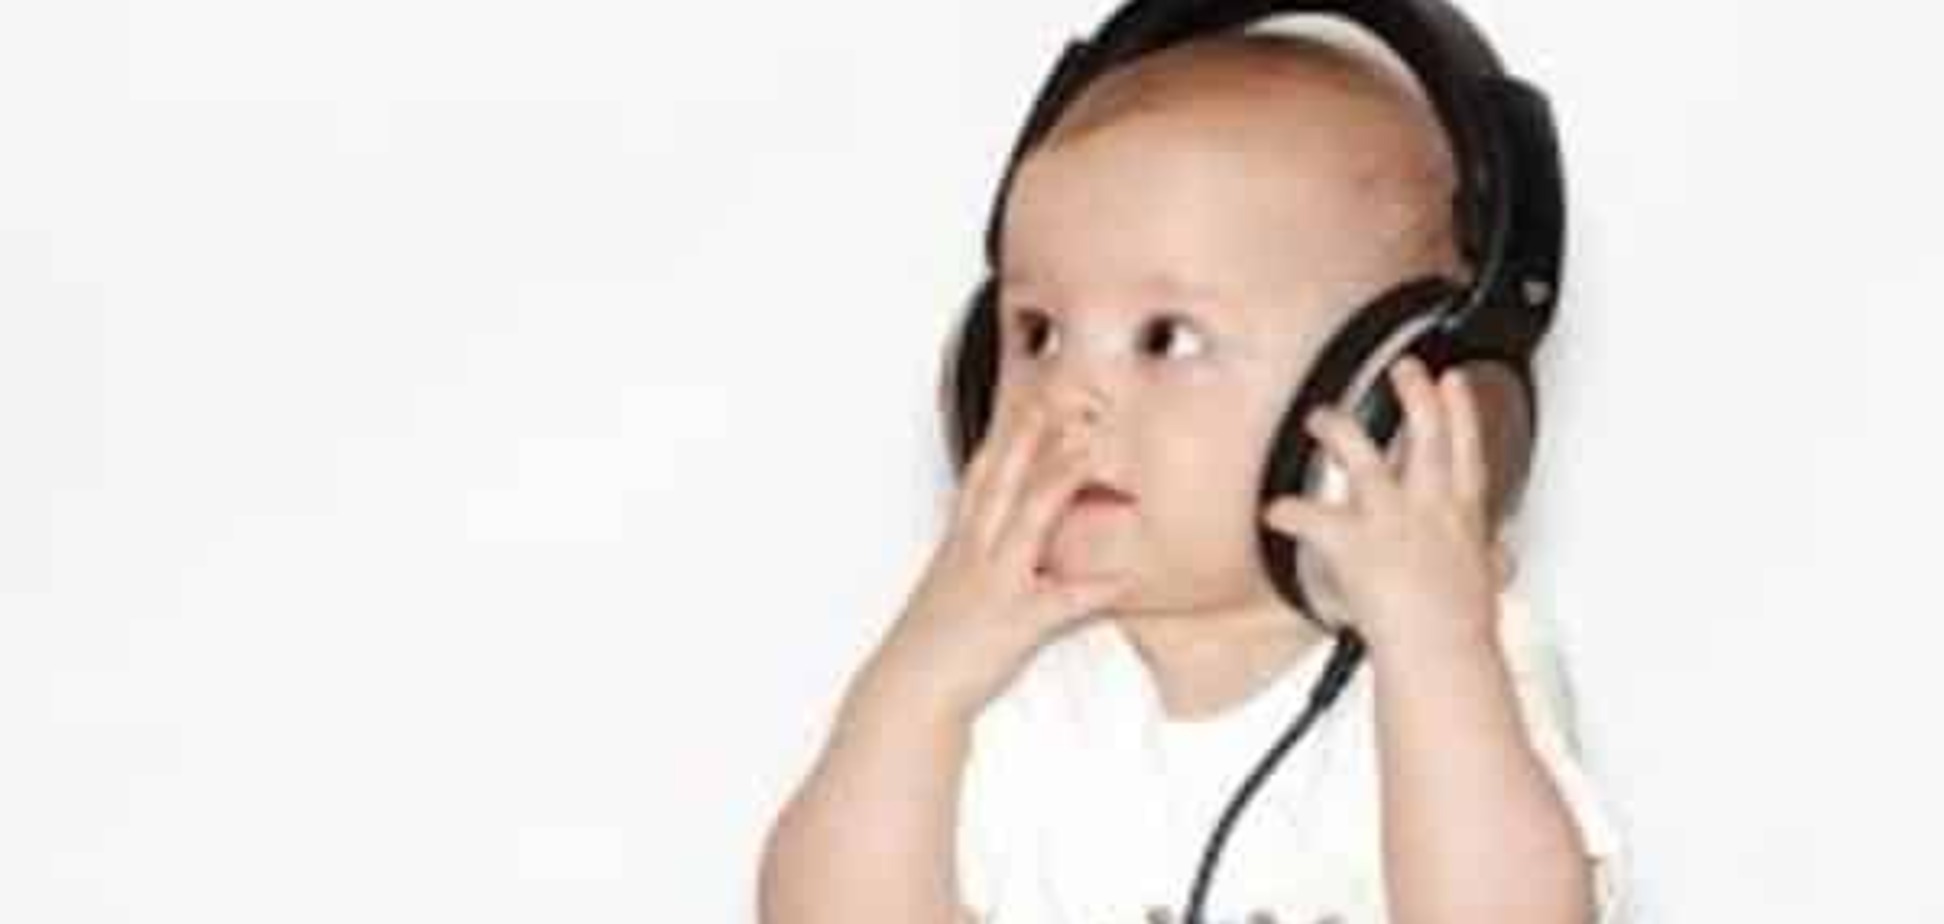 Музыка может повлиять на умственное развитие младенцев